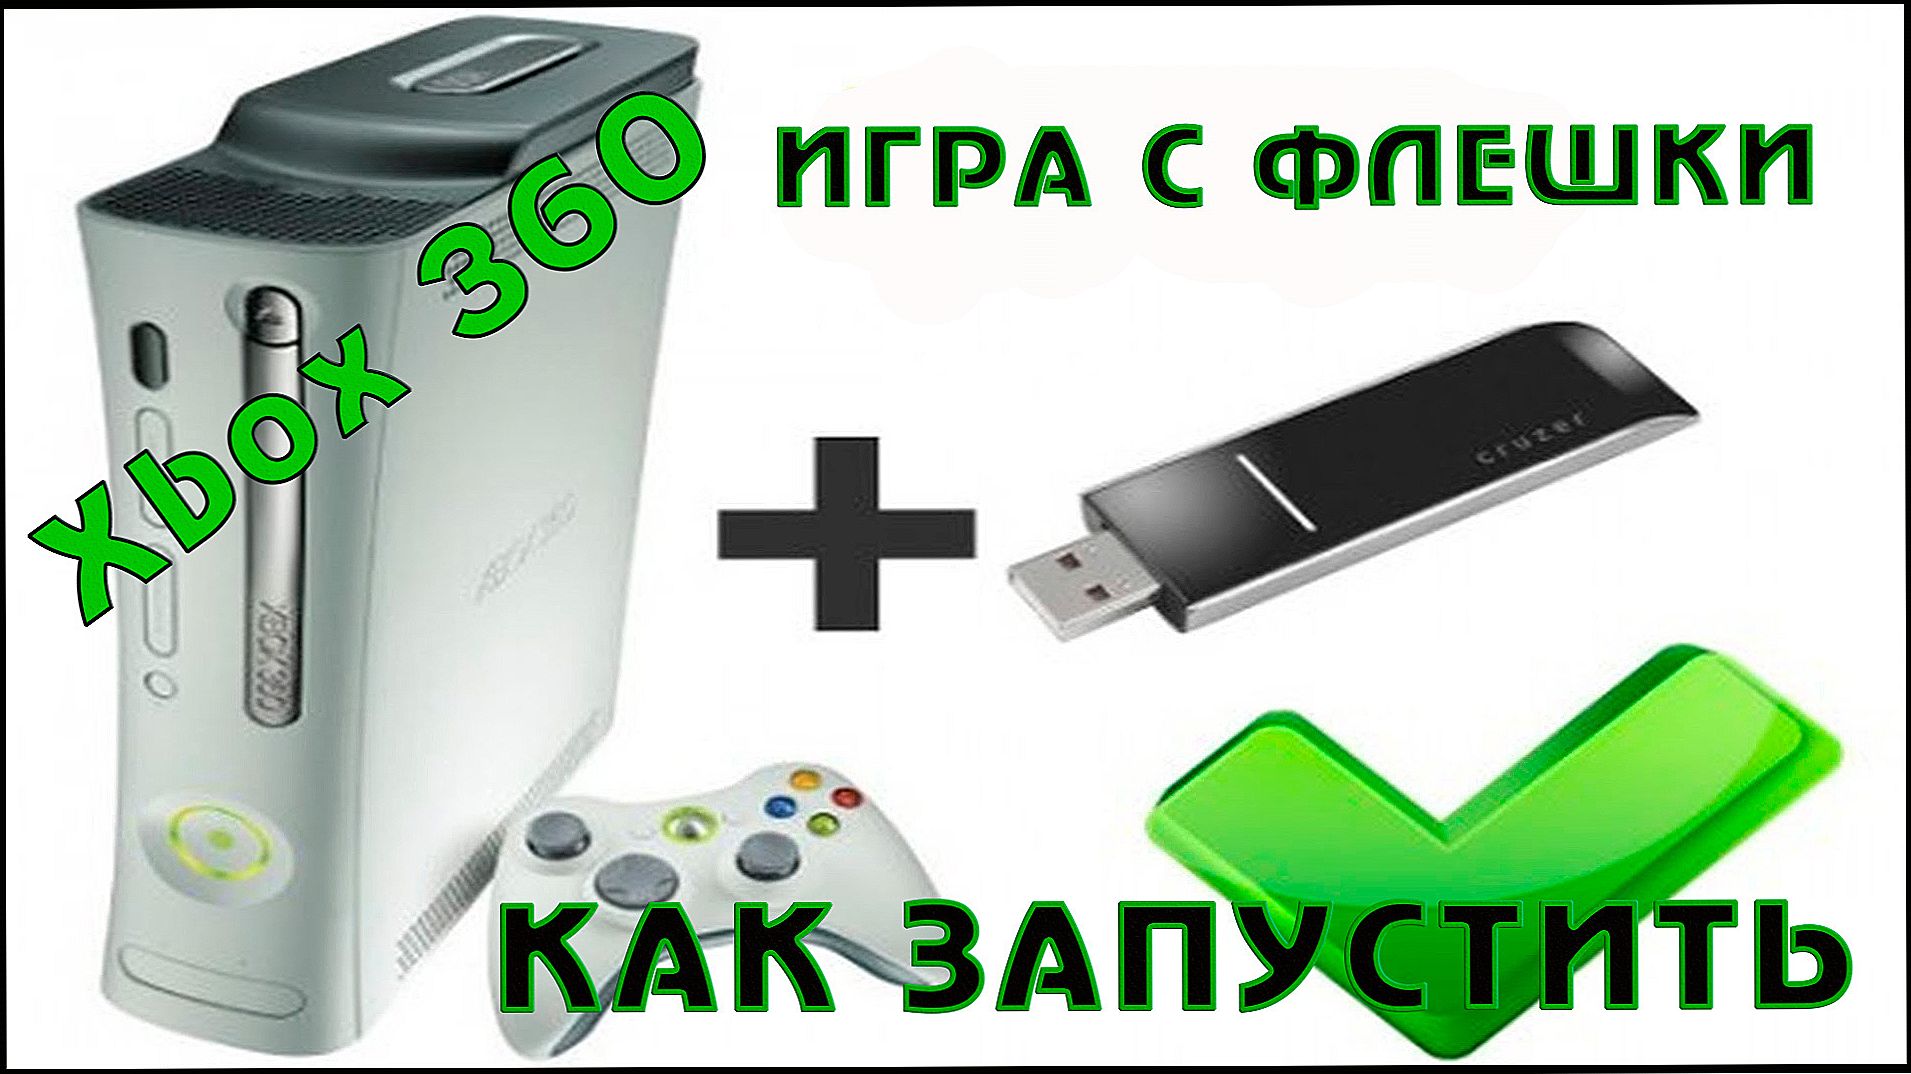 Prehrávanie na konzole Xbox 360 pomocou jednotky flash